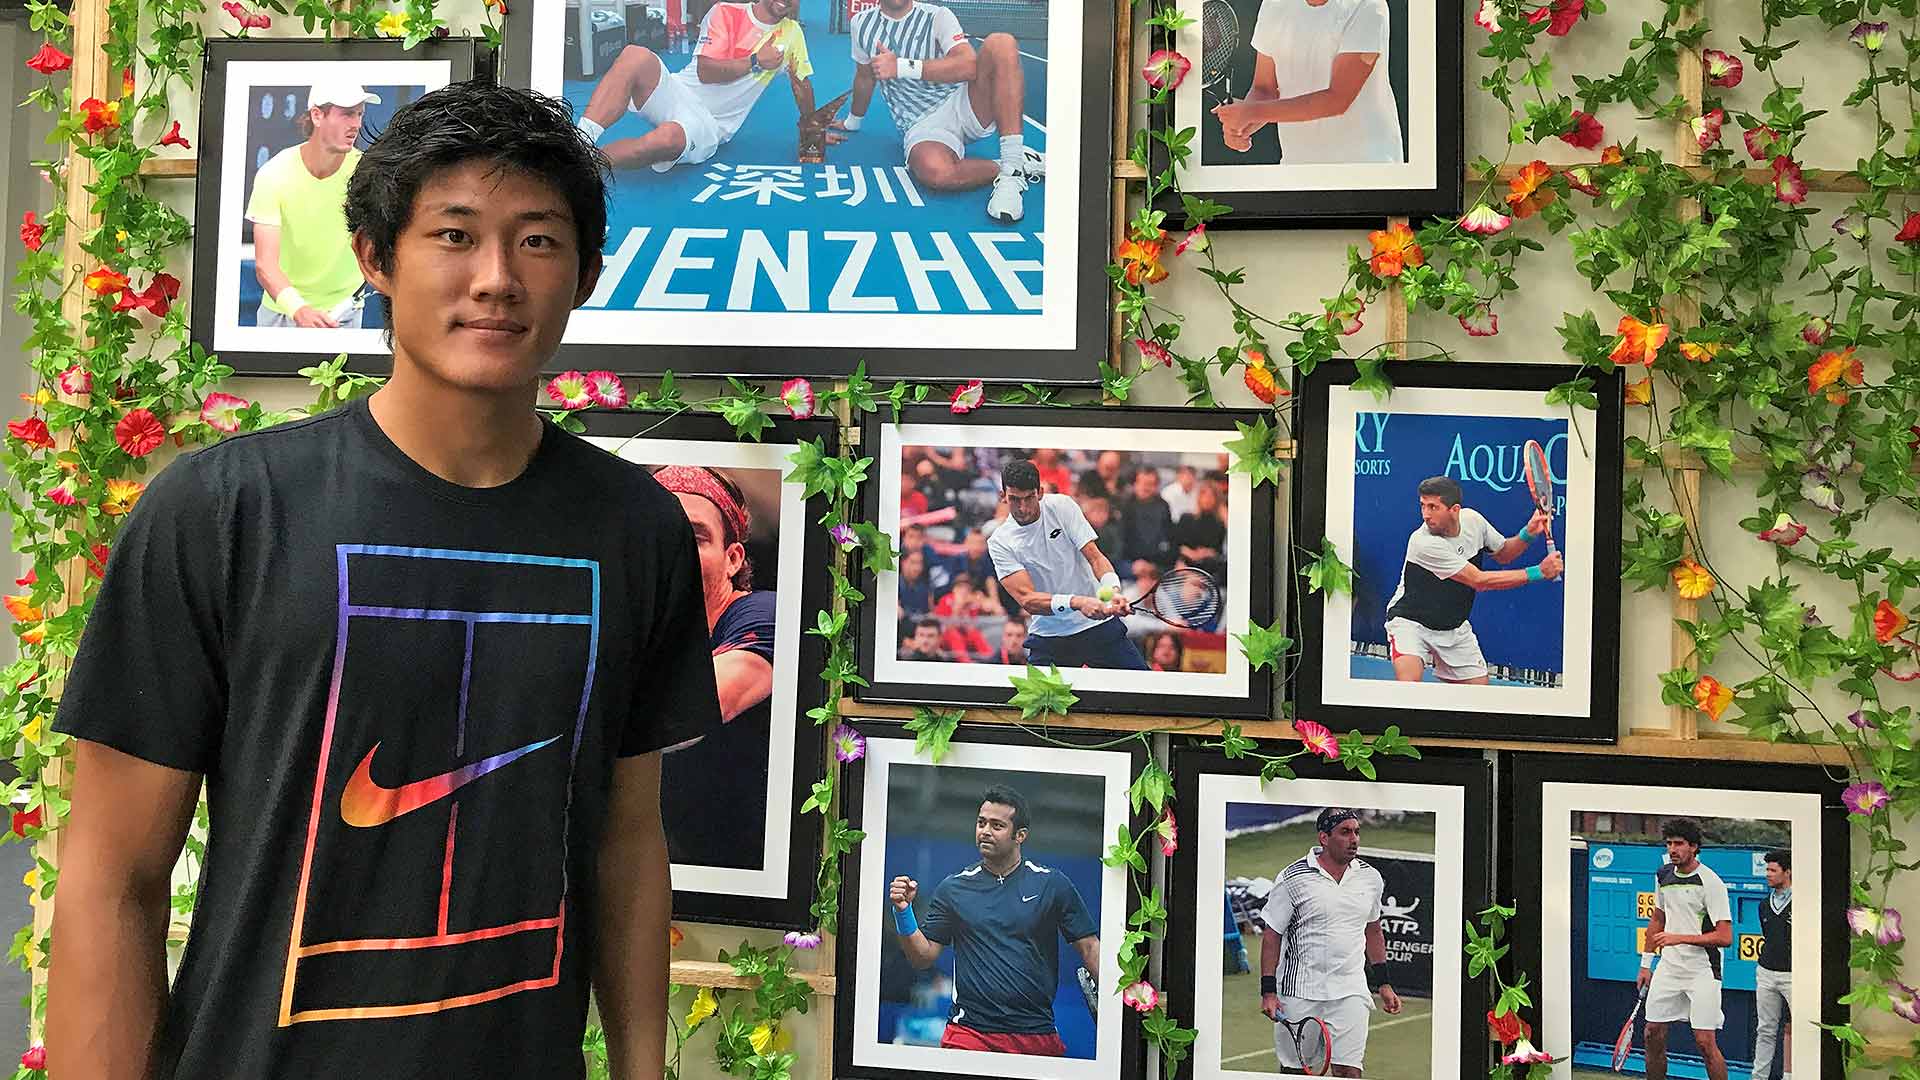 Zhizhen Zhang, No. 456 del Emirates ATP Rankings a los 20 años, es uno de los grandes valores de futuro del tenis chino.